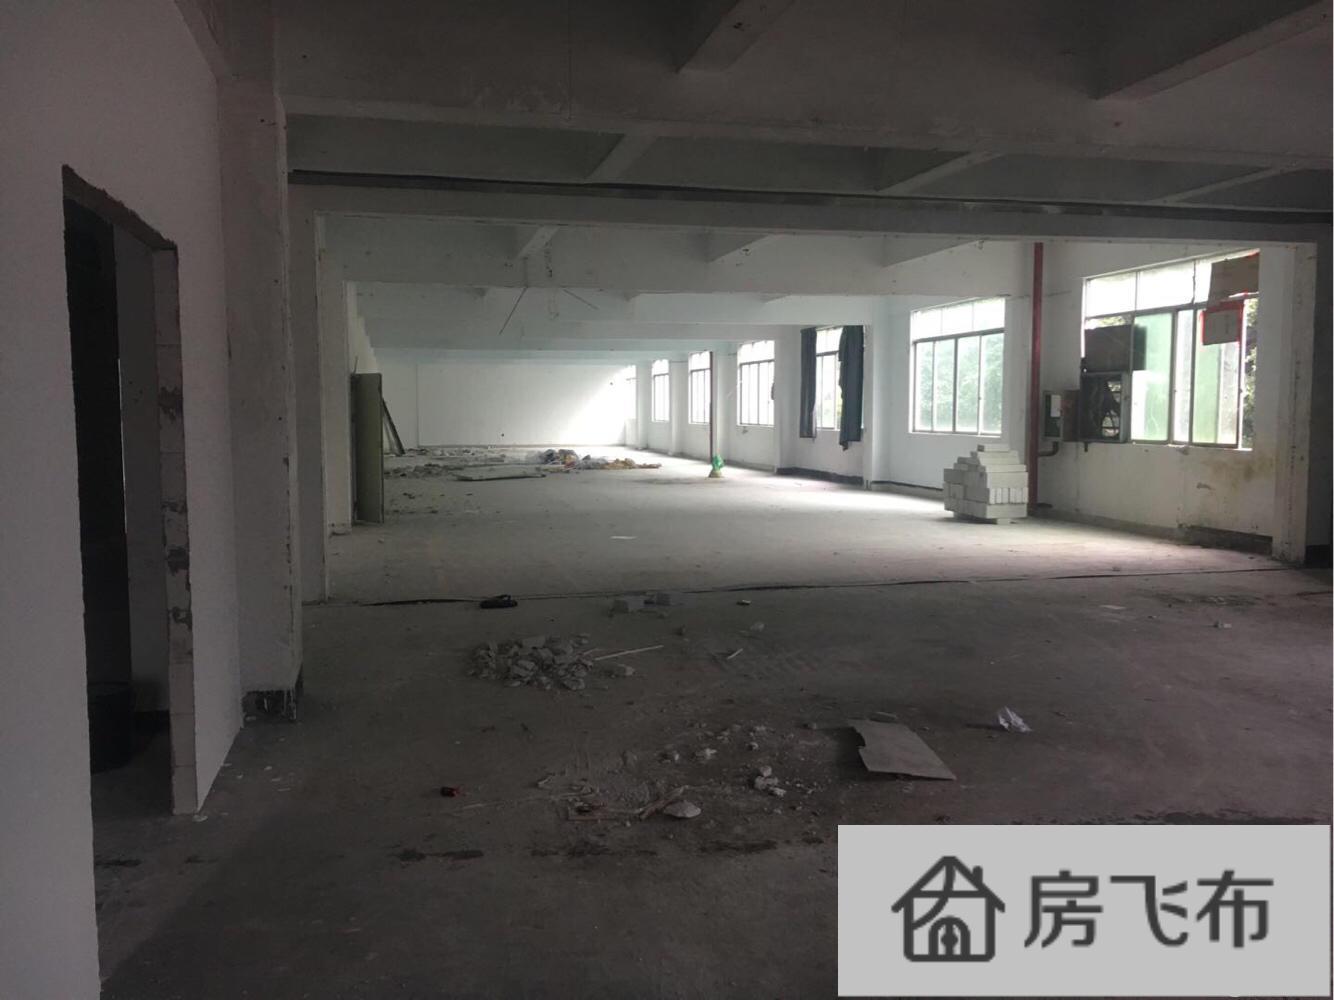 (出租) 福永 地铁口 楼上 200平米 厂房 出租